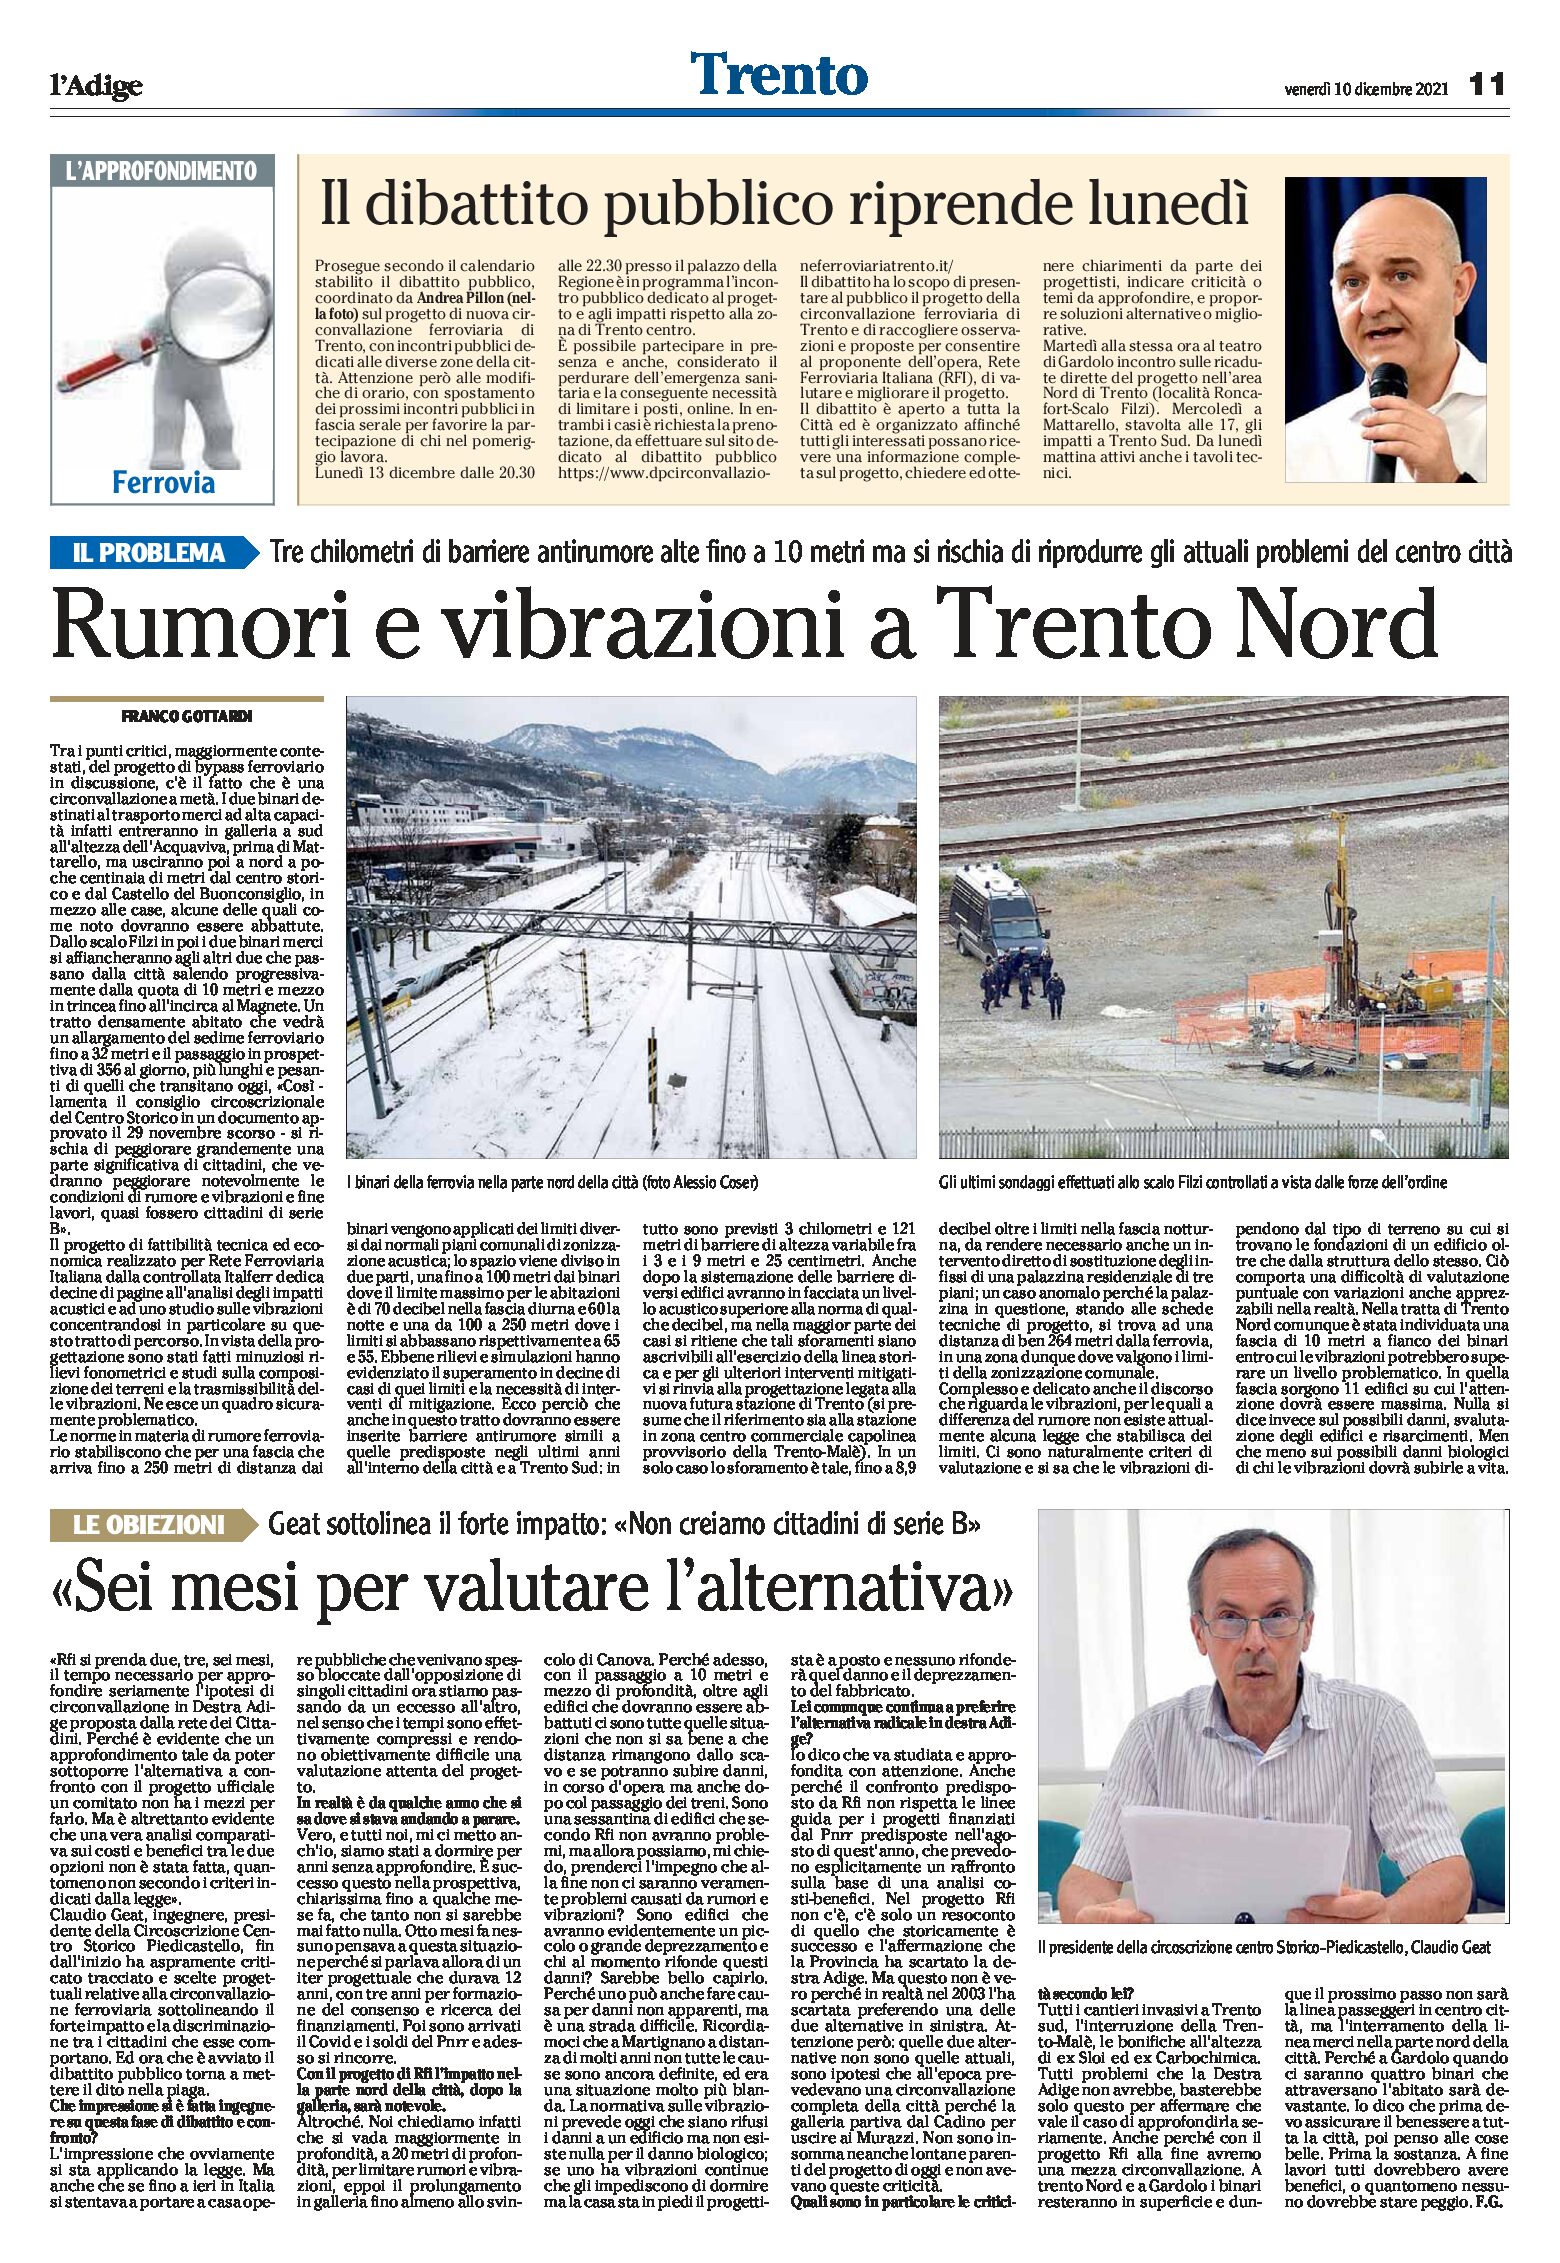 Trento, bypass ferroviario: dibattito, problemi e intervista a Geat